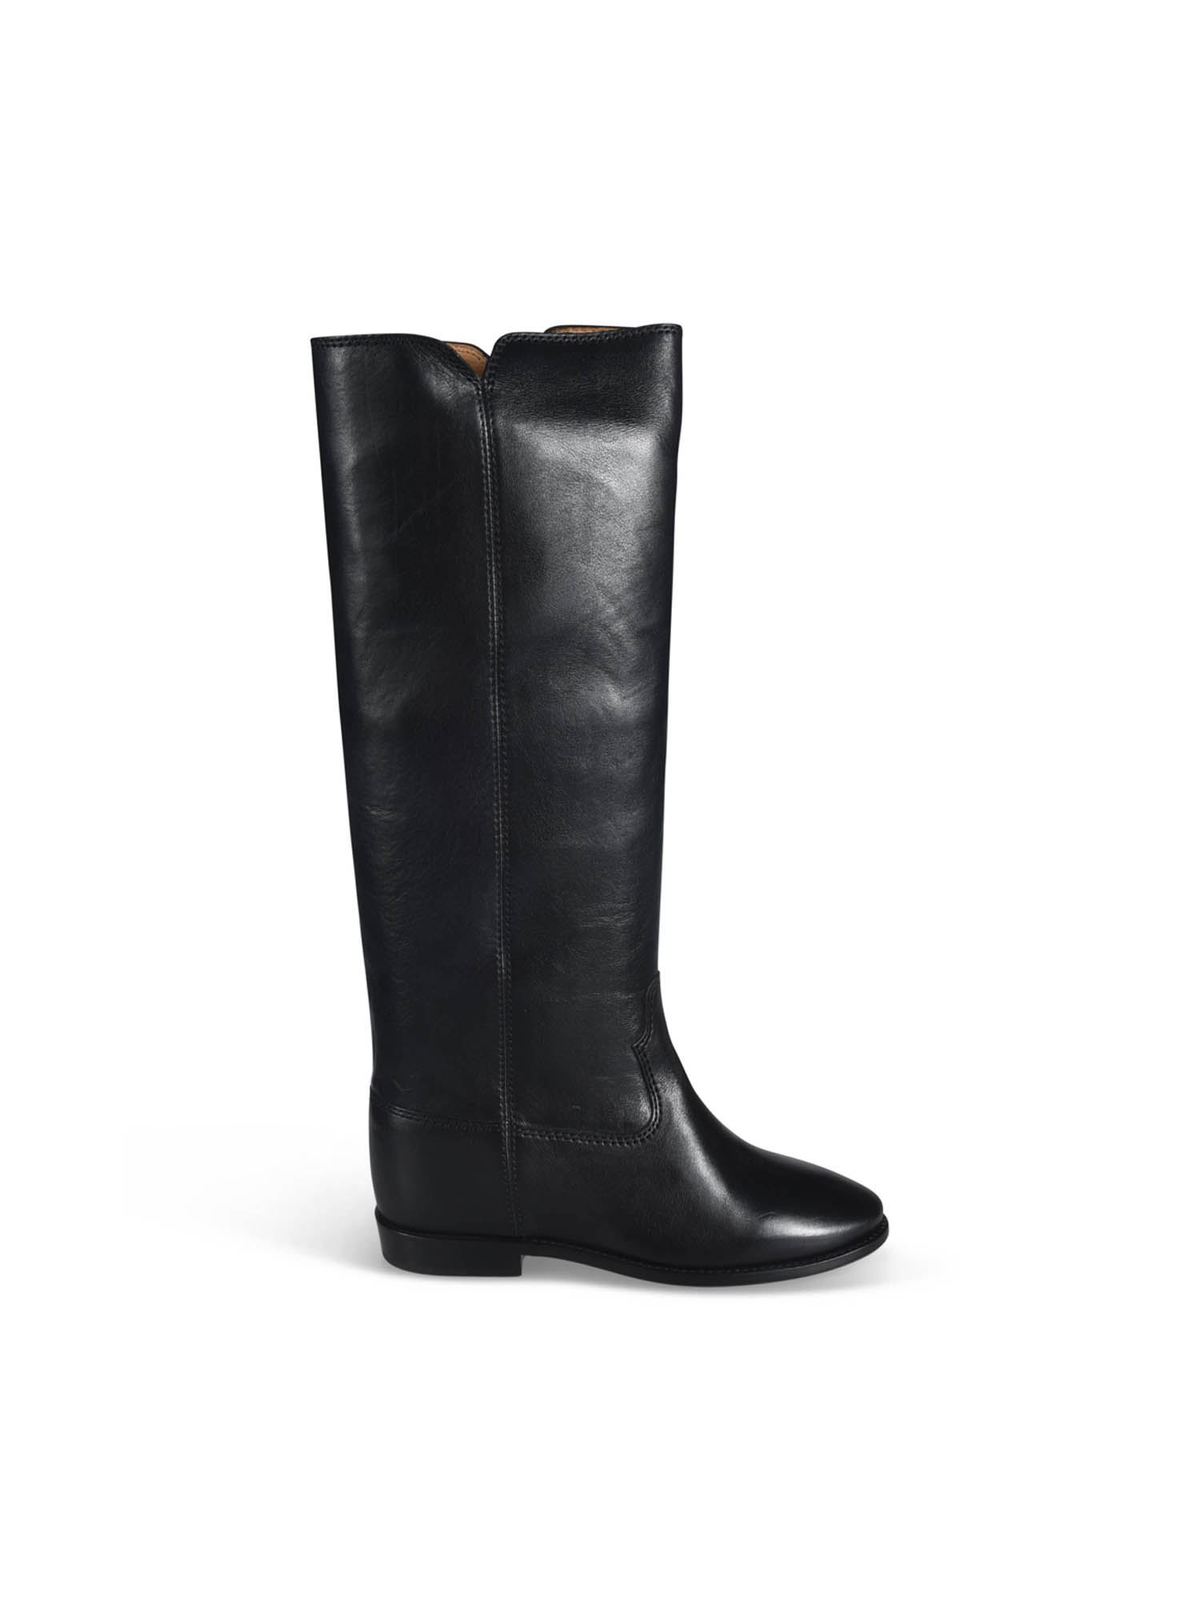 isabel marant boots black